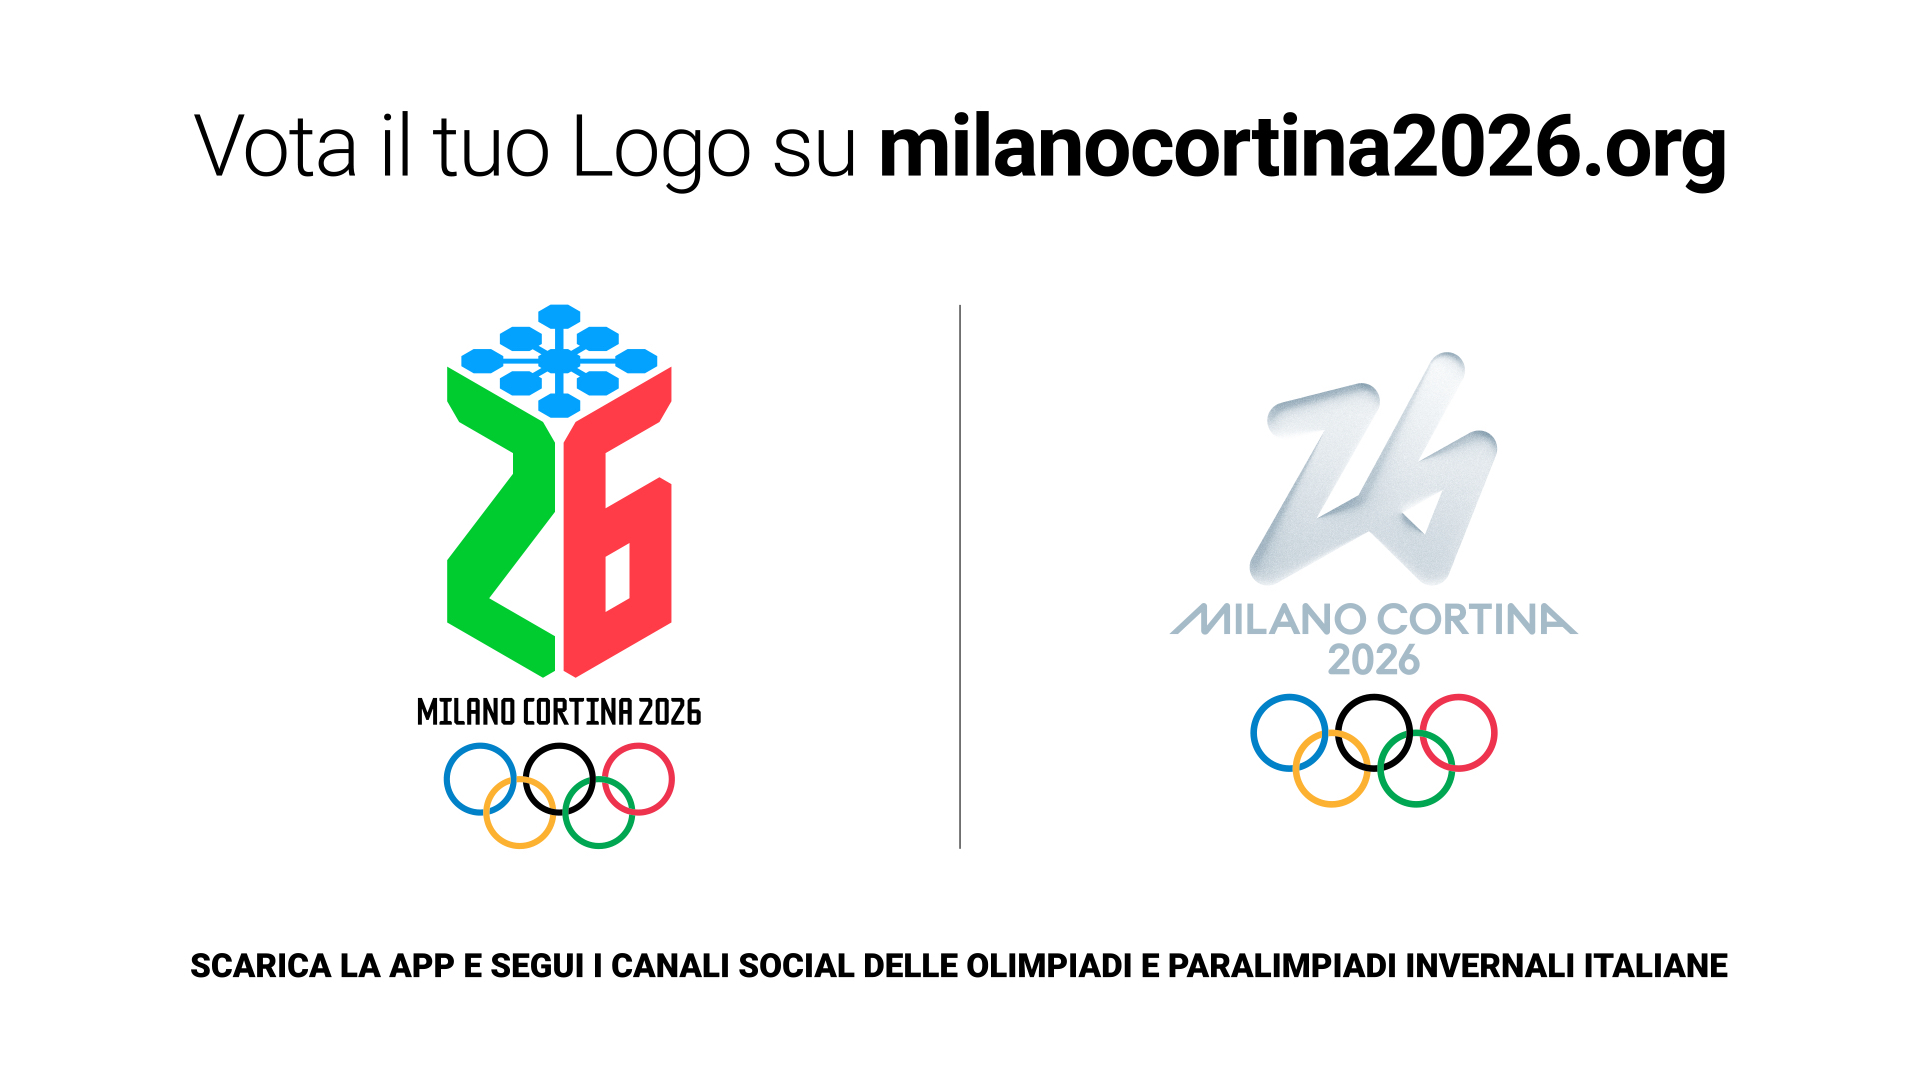 Svelati 2 loghi al Festival di Sanremo. Sarà il voto online a stabilire il simbolo dei Giochi